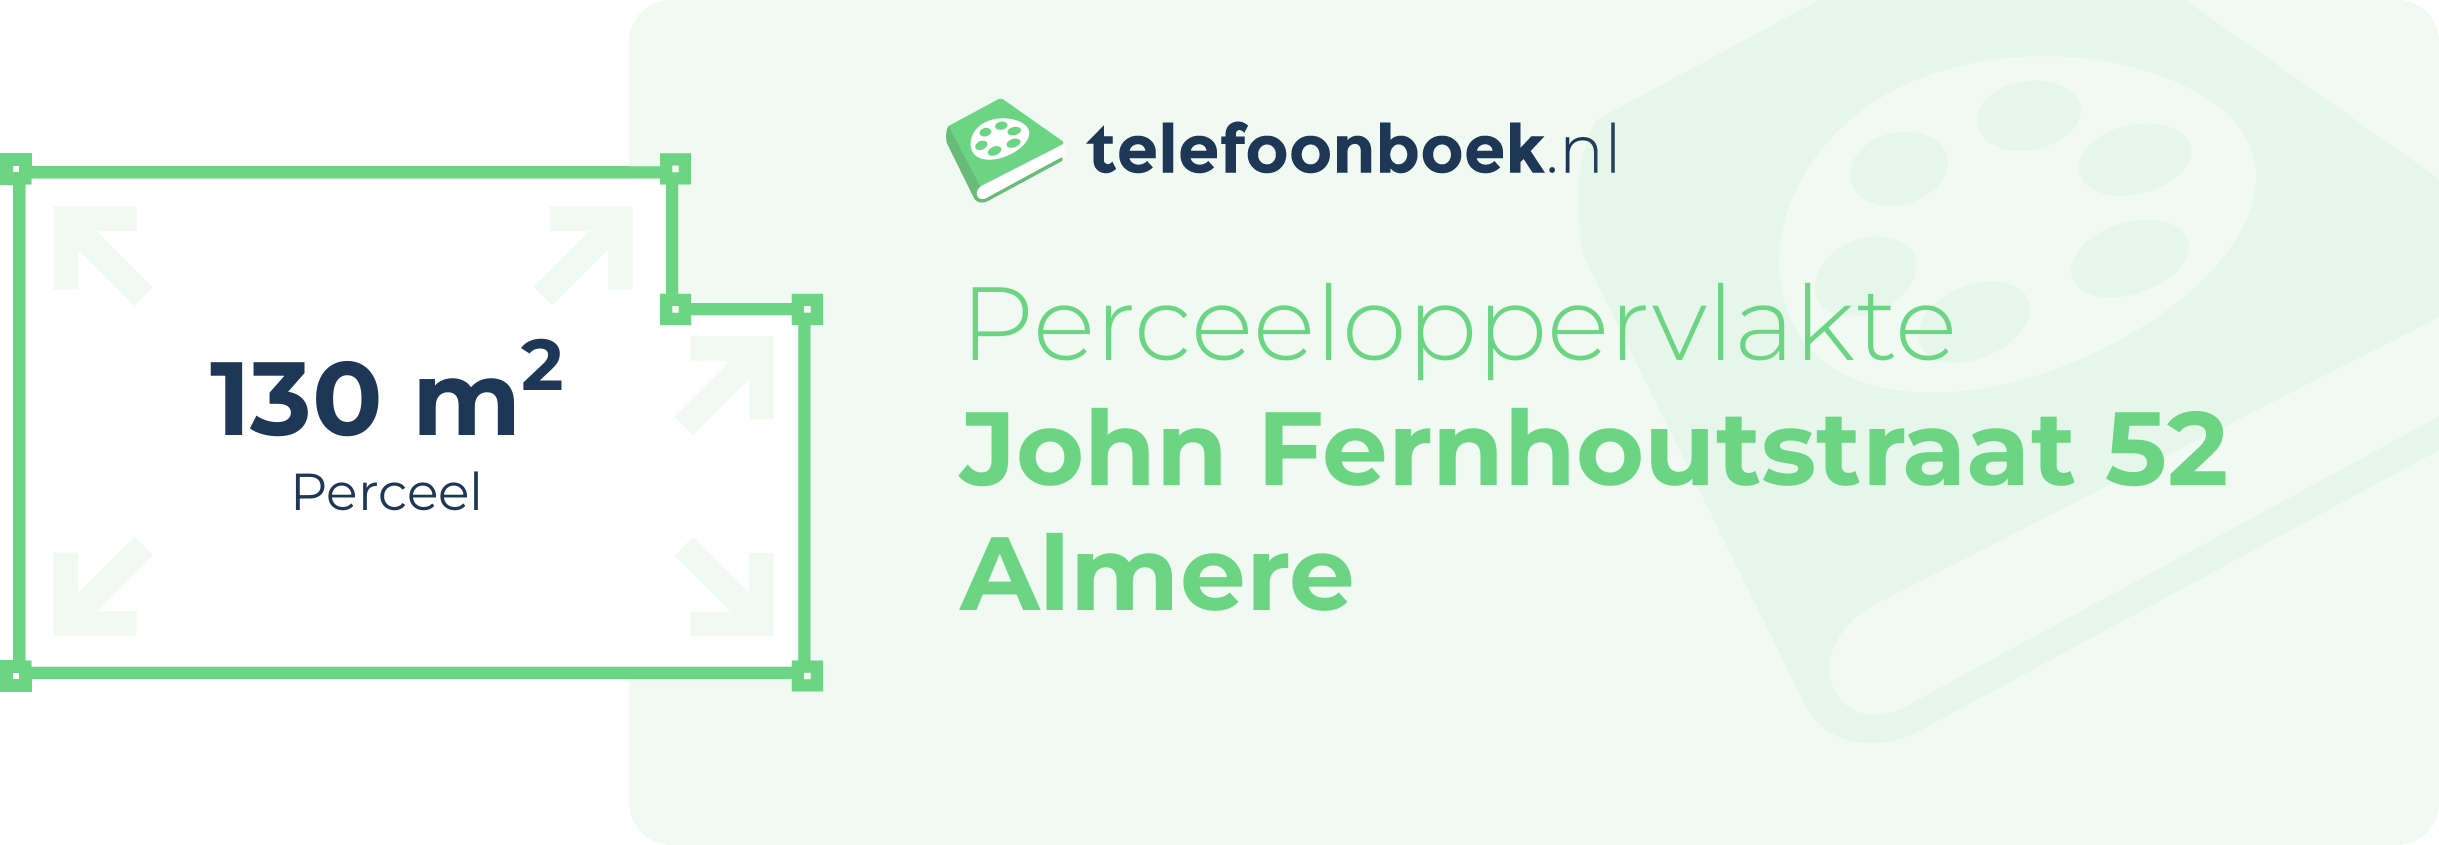 Perceeloppervlakte John Fernhoutstraat 52 Almere